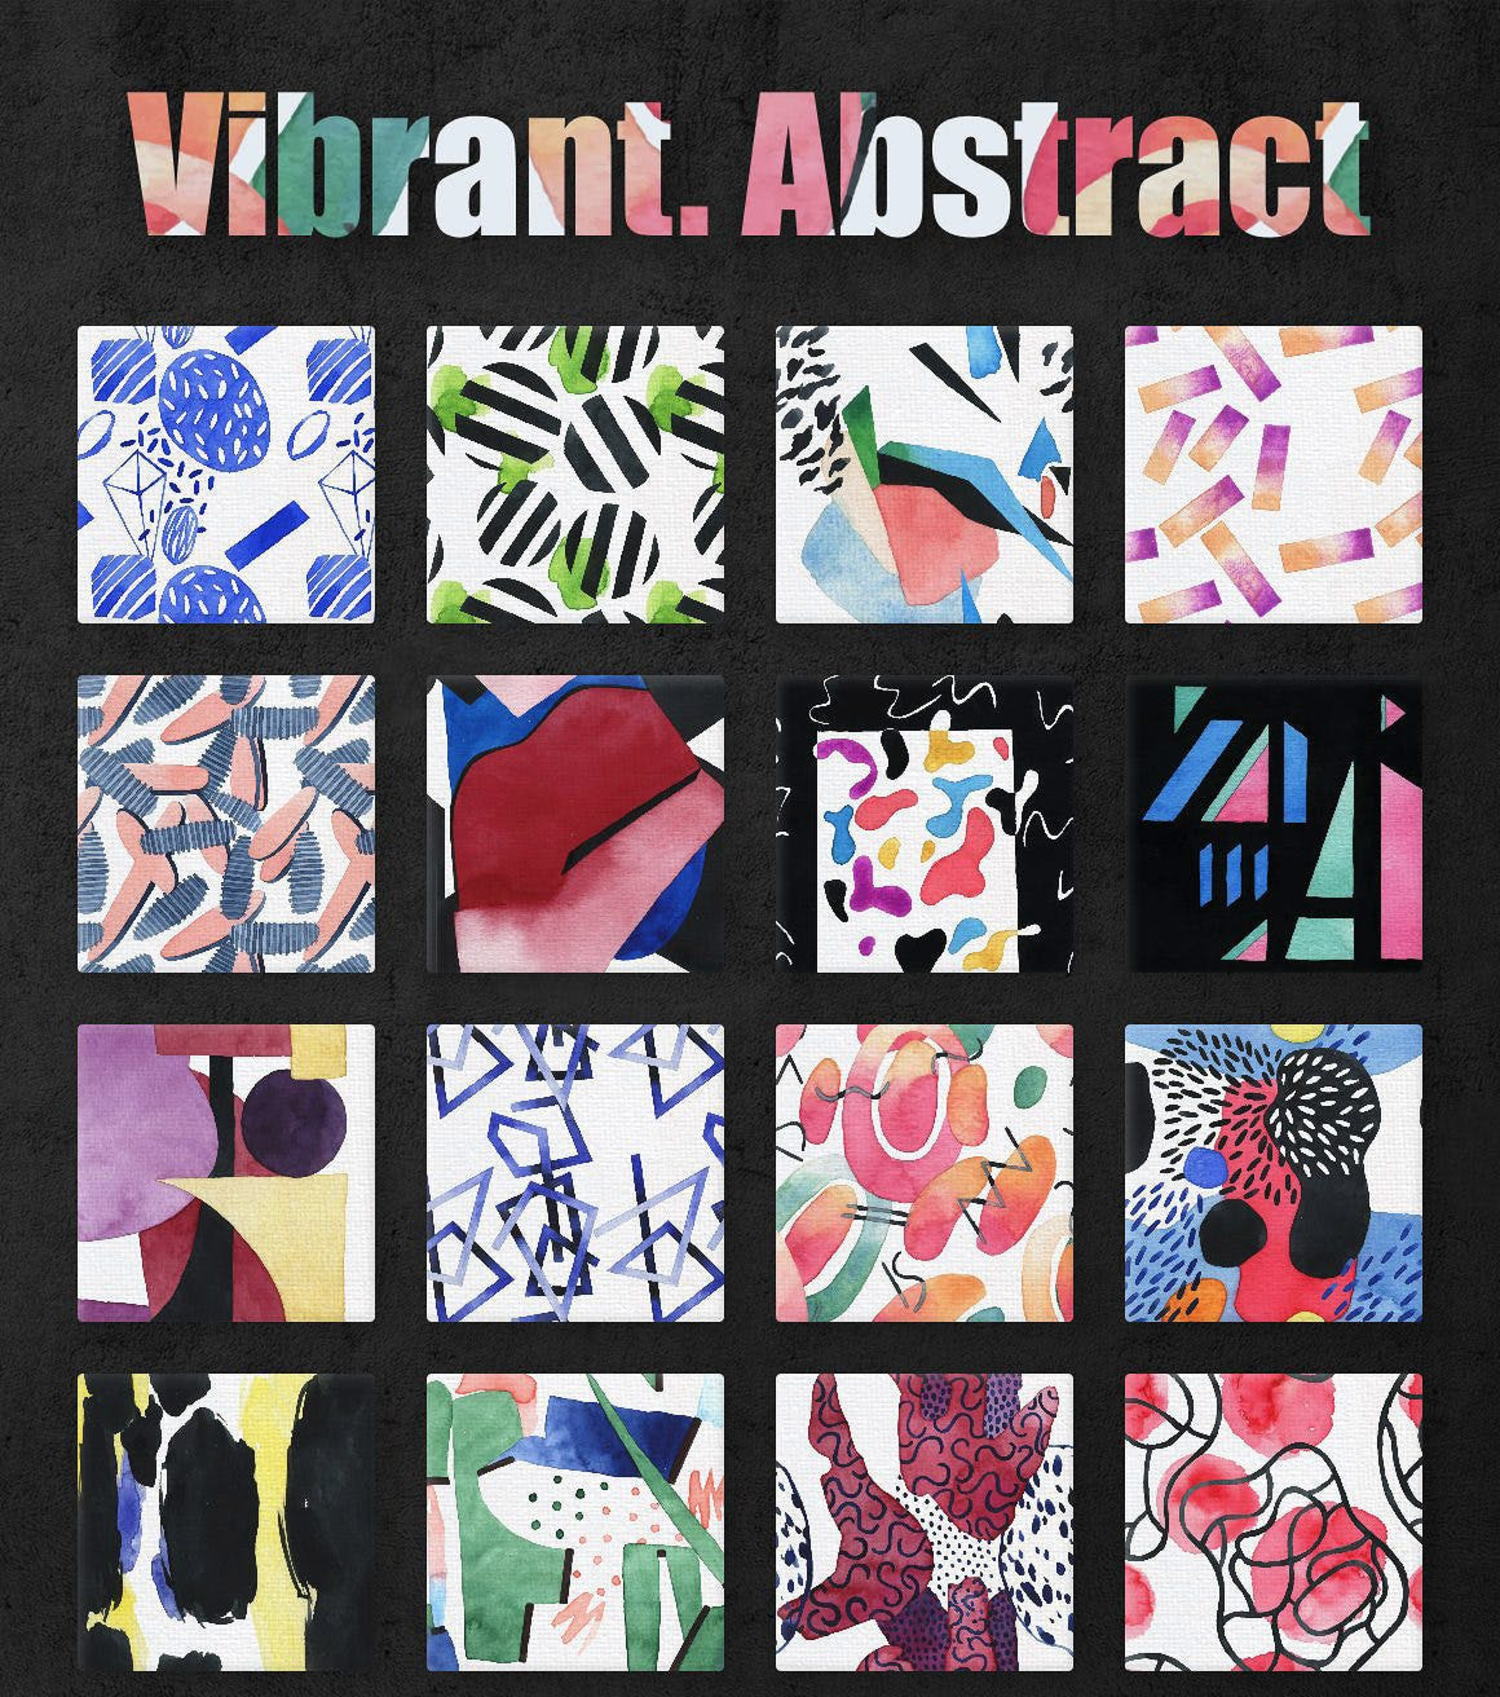 4864 时尚潮流抽象艺术涂鸦水彩绘画纹理背景底纹png图案设计素材 Vibrant Watercolor Patterns